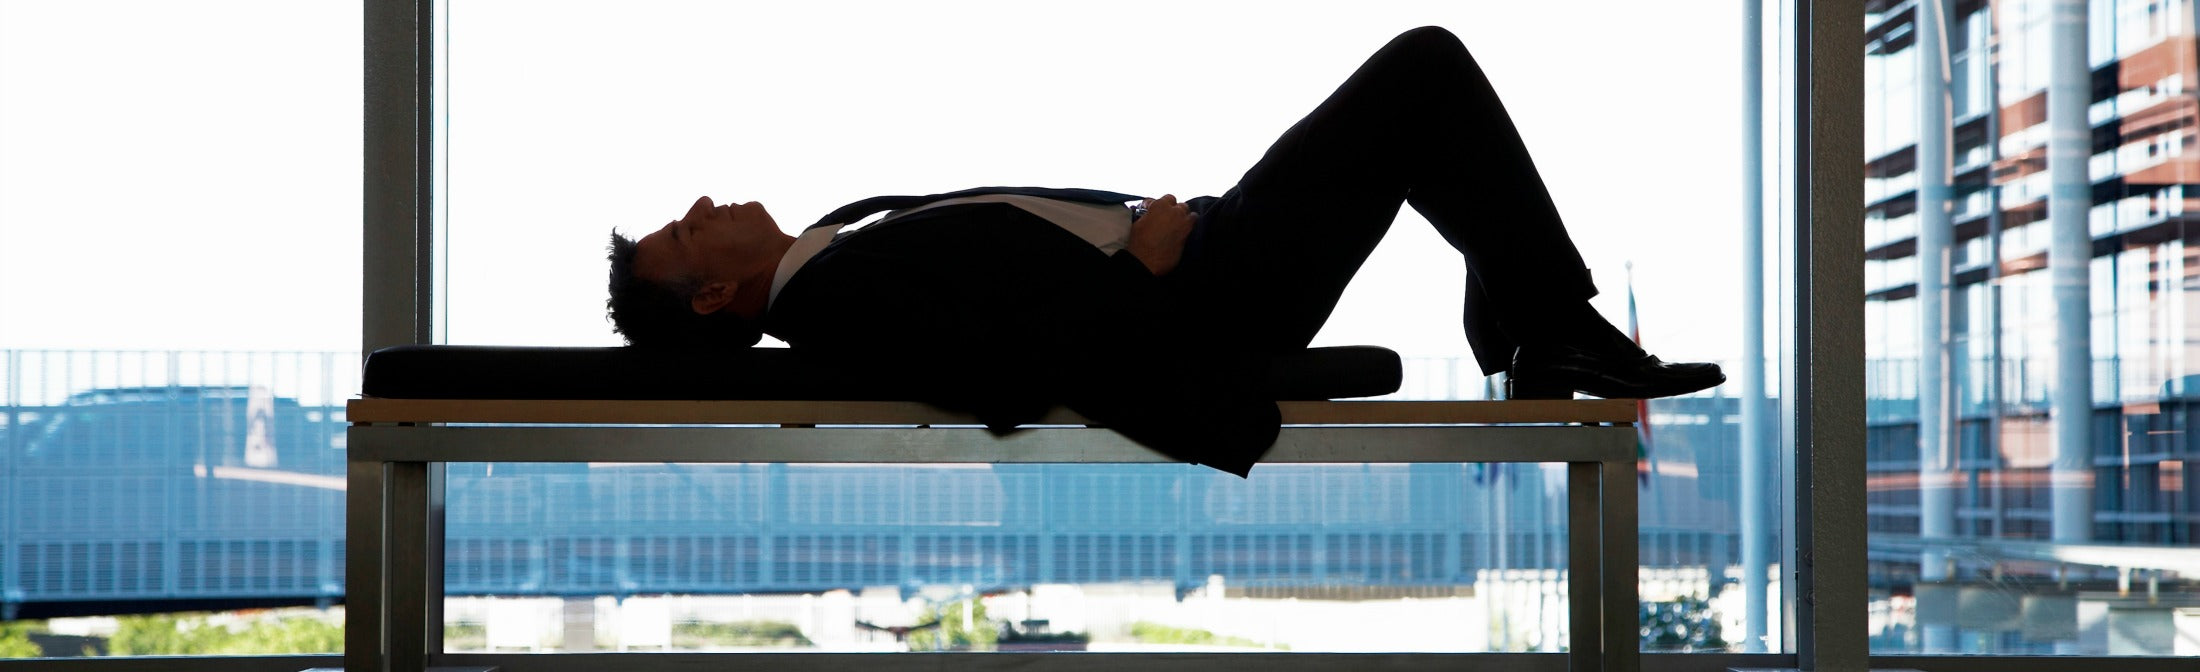 Should You Nap at Work? You Betcha!